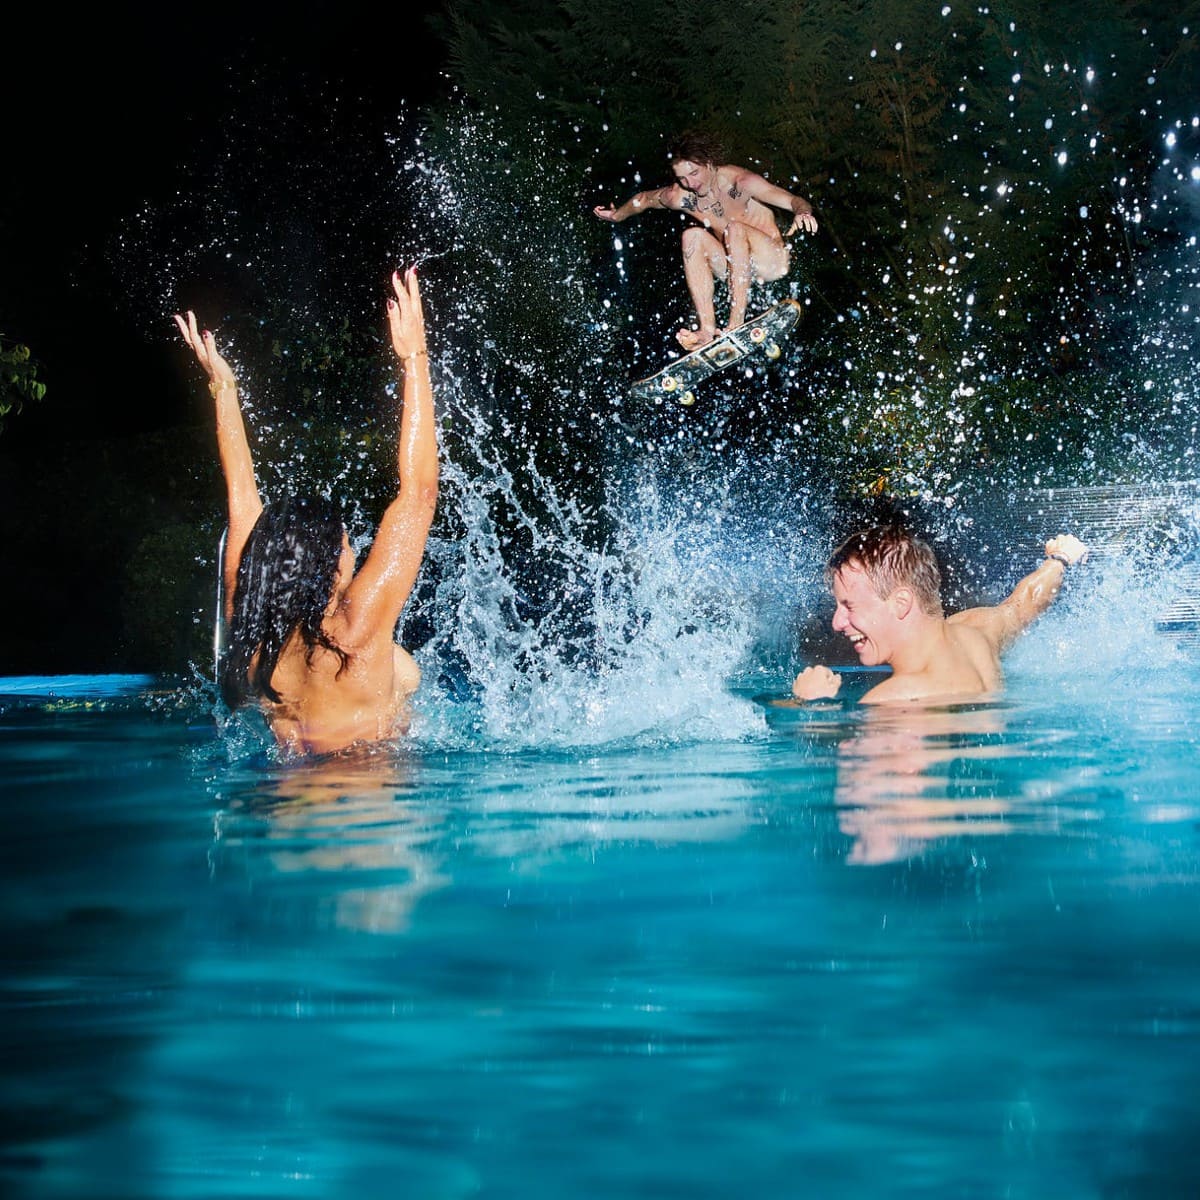 Gaffel Fassbrause Kampagnen Foto 2022. Nachtschwimmen im Pool mit Skateboard. Fotografiert vom kölner Werbefotografen Valery Kloubert in Köln